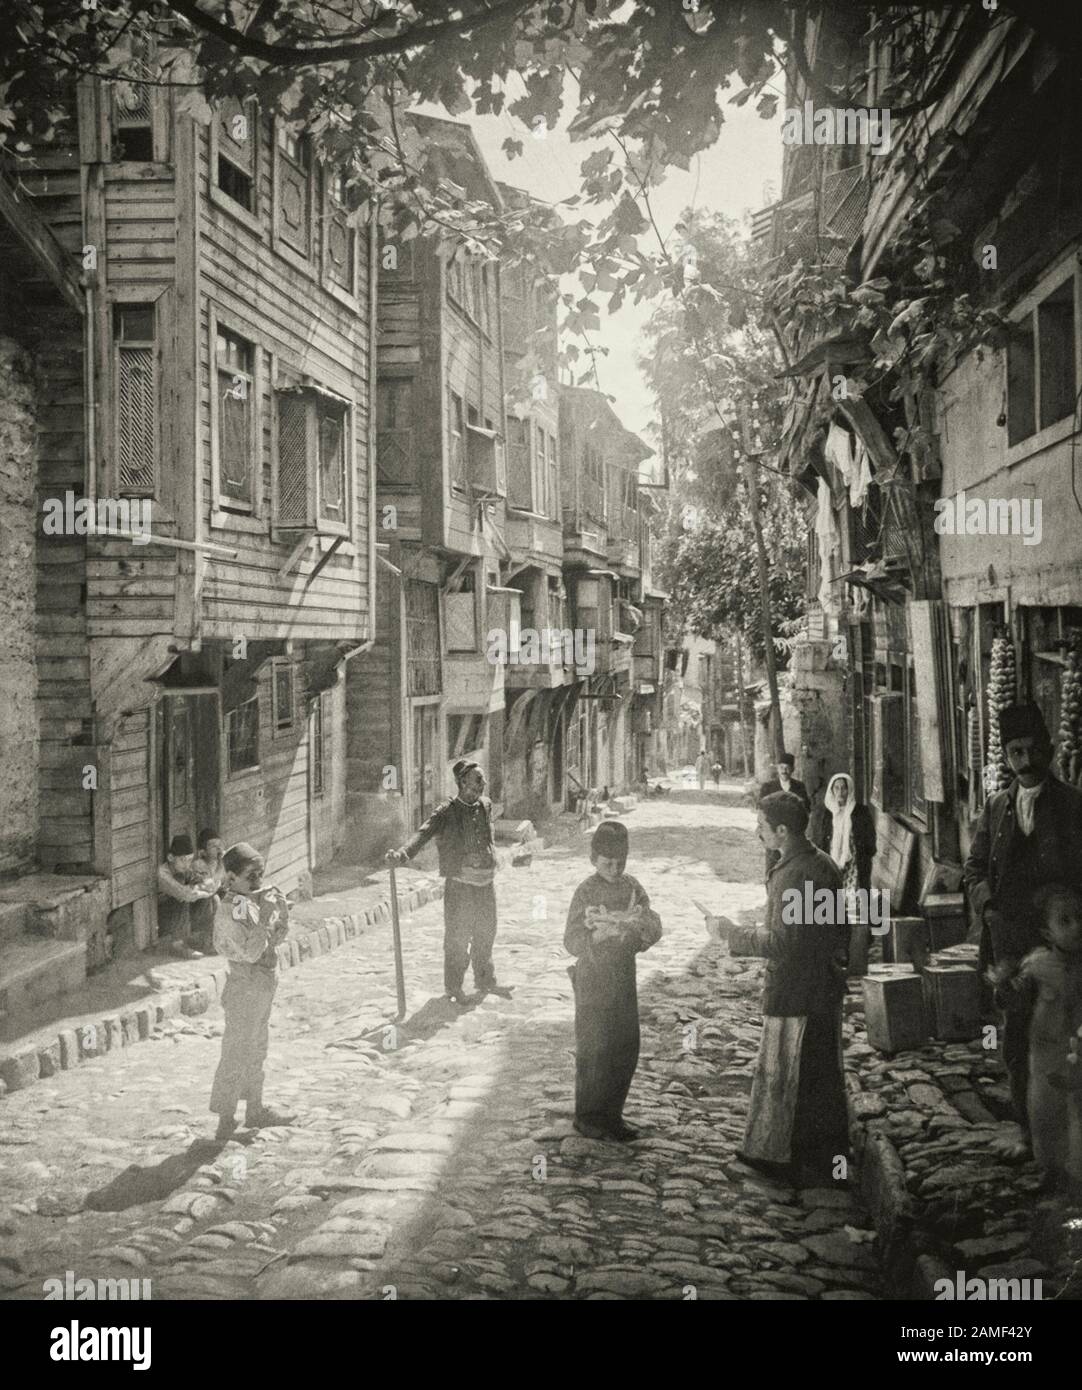 Una scena in un negozio di frutta e verdura su una delle vecchie strade di Istanbul vicino alla Hagia Sophia (Ayasofya), 1912. Foto Stock